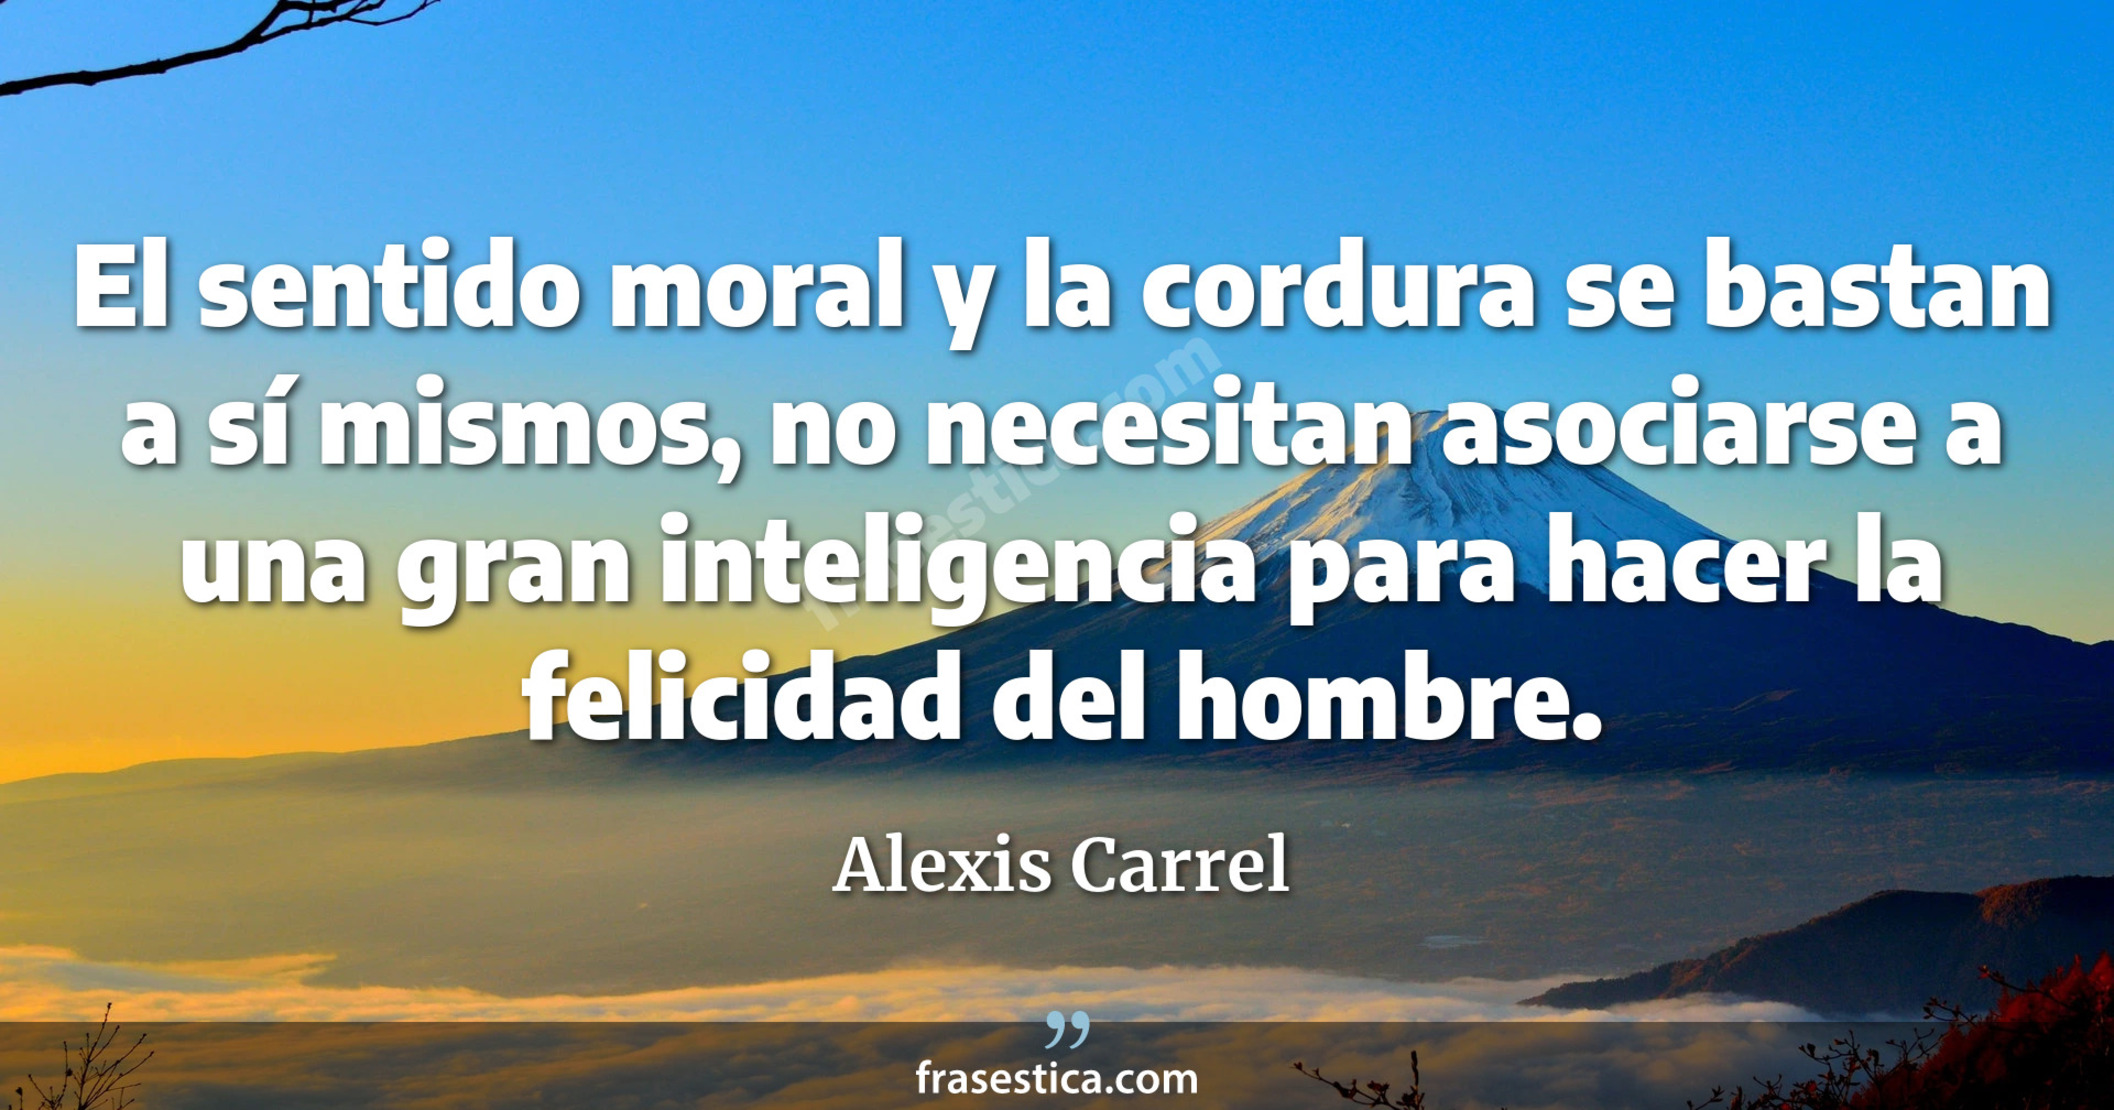 El sentido moral y la cordura se bastan a sí mismos, no necesitan asociarse a una gran inteligencia para hacer la felicidad del hombre. - Alexis Carrel